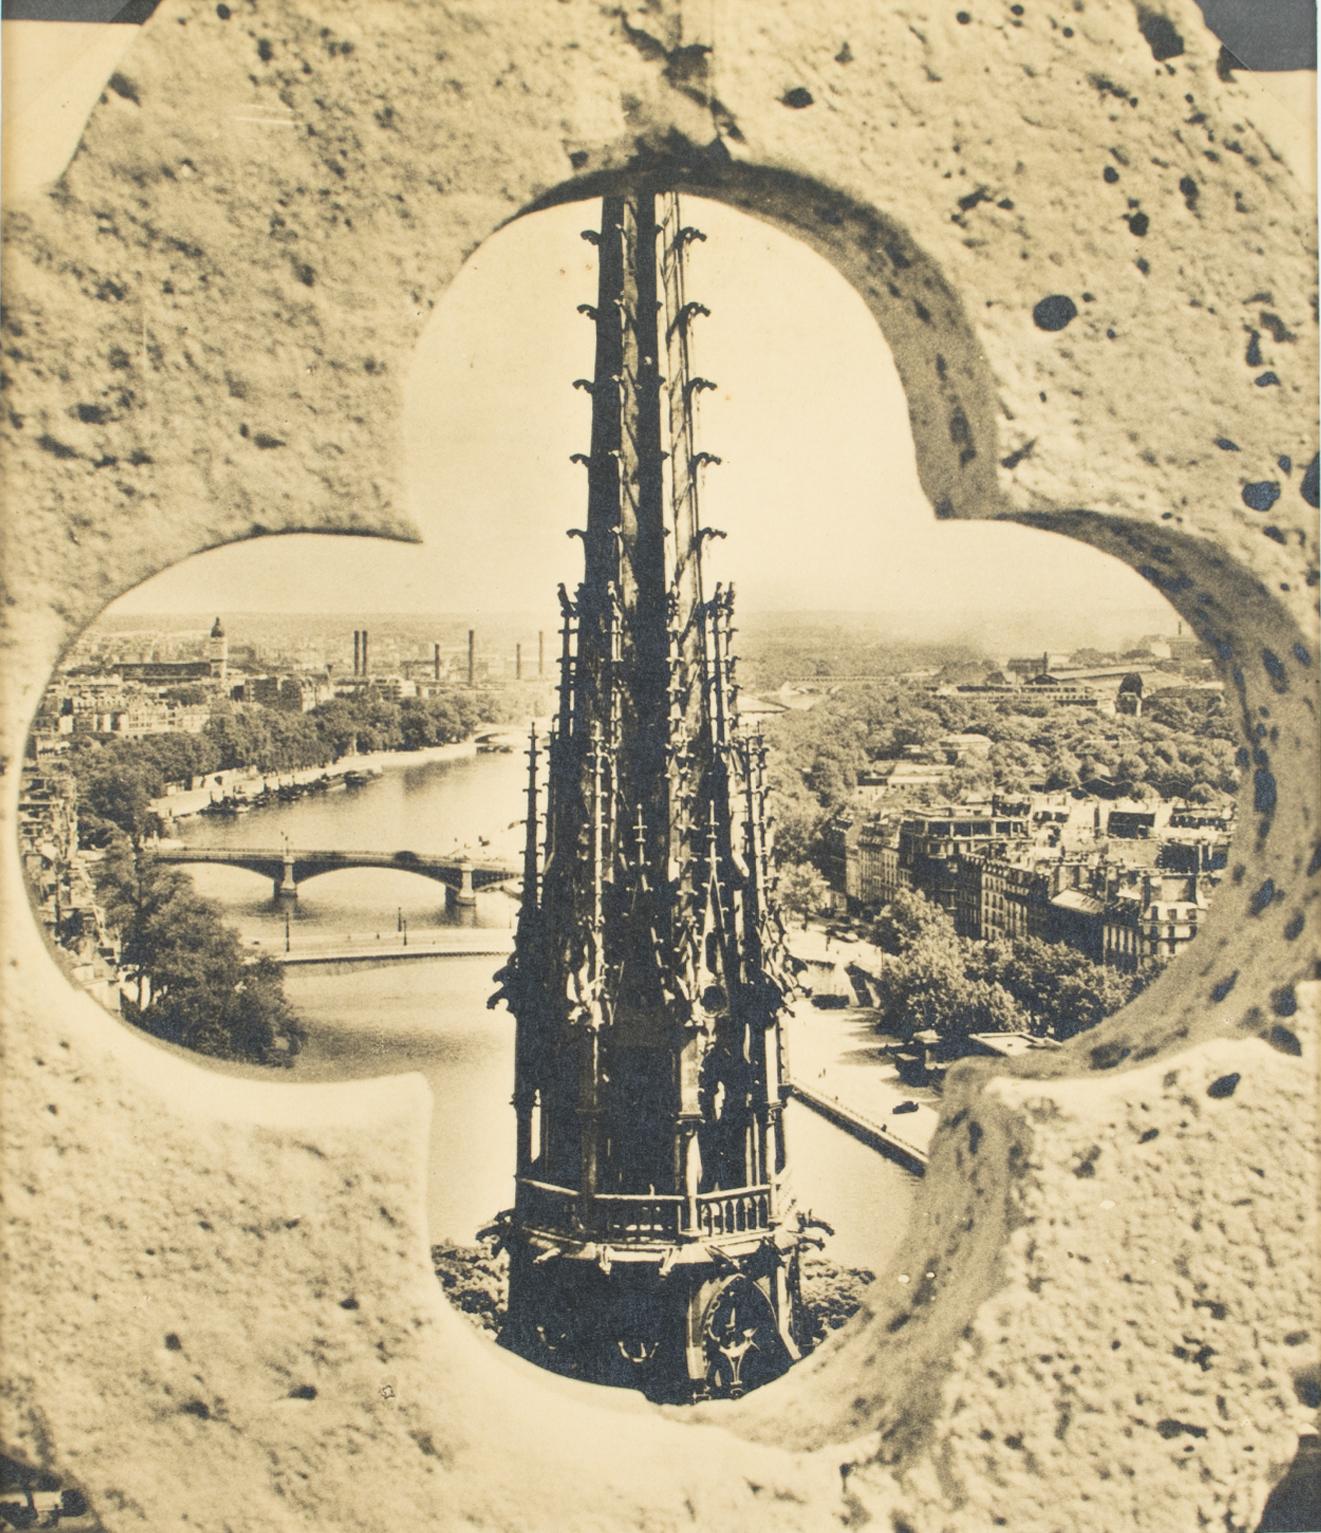 Albert Monier Landscape Photograph - Paris, Notre Dame Cathedral, Black and White Original Photography Postcard